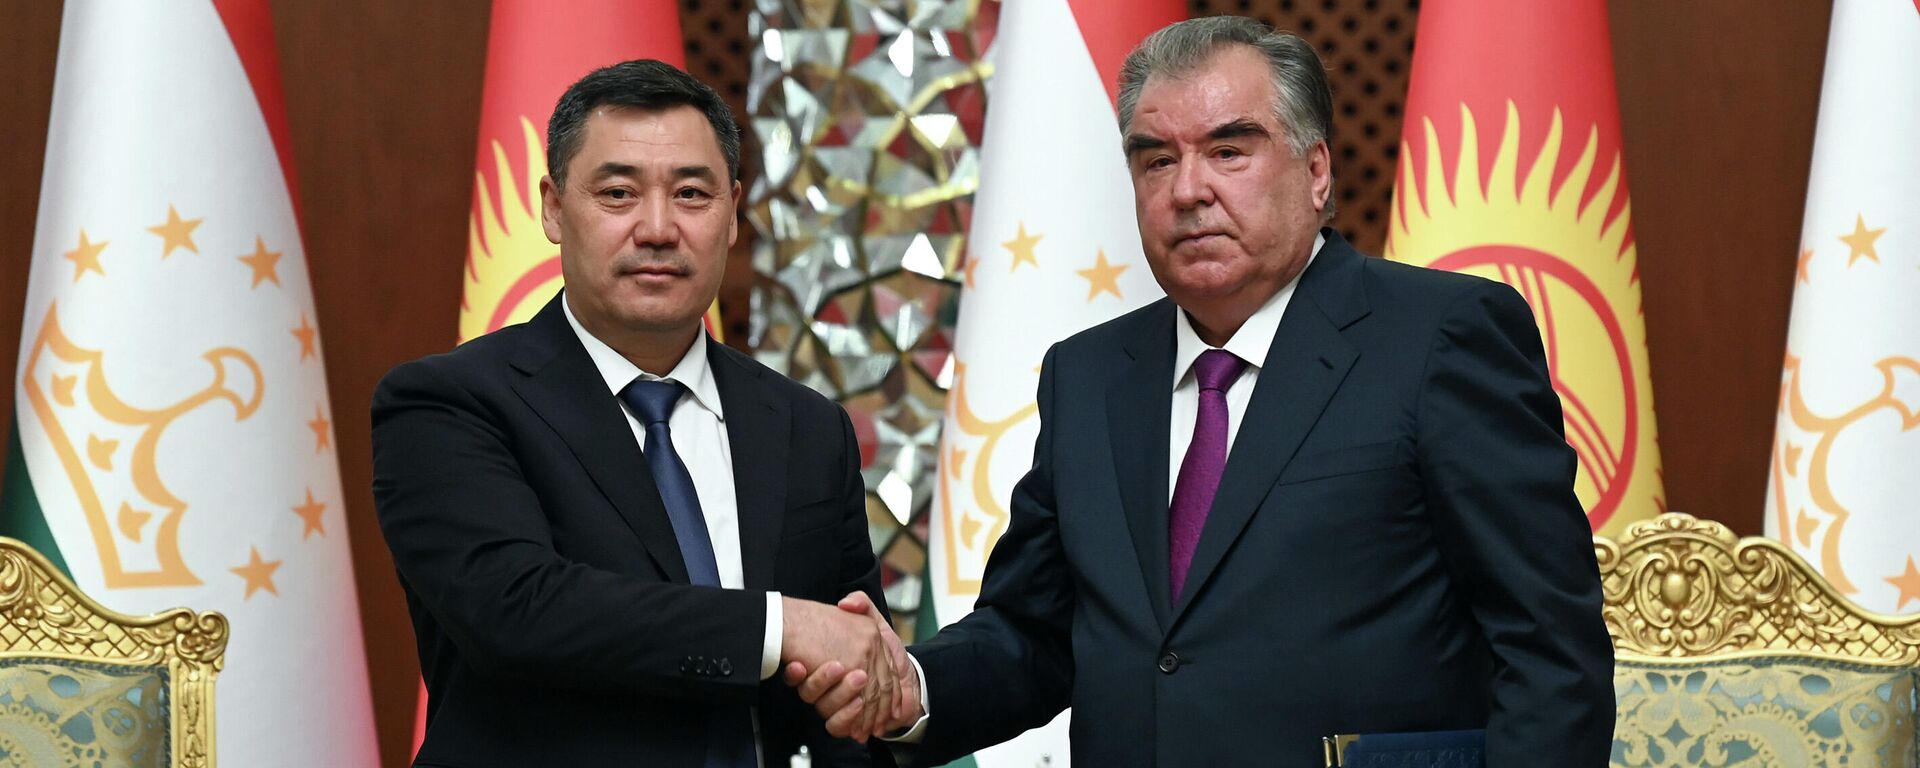 Президент Таджикистан Эмомали Рахмон и президент Кыргызстана Садыр Жапаров подписали ряд документов - Sputnik Таджикистан, 1920, 29.06.2021